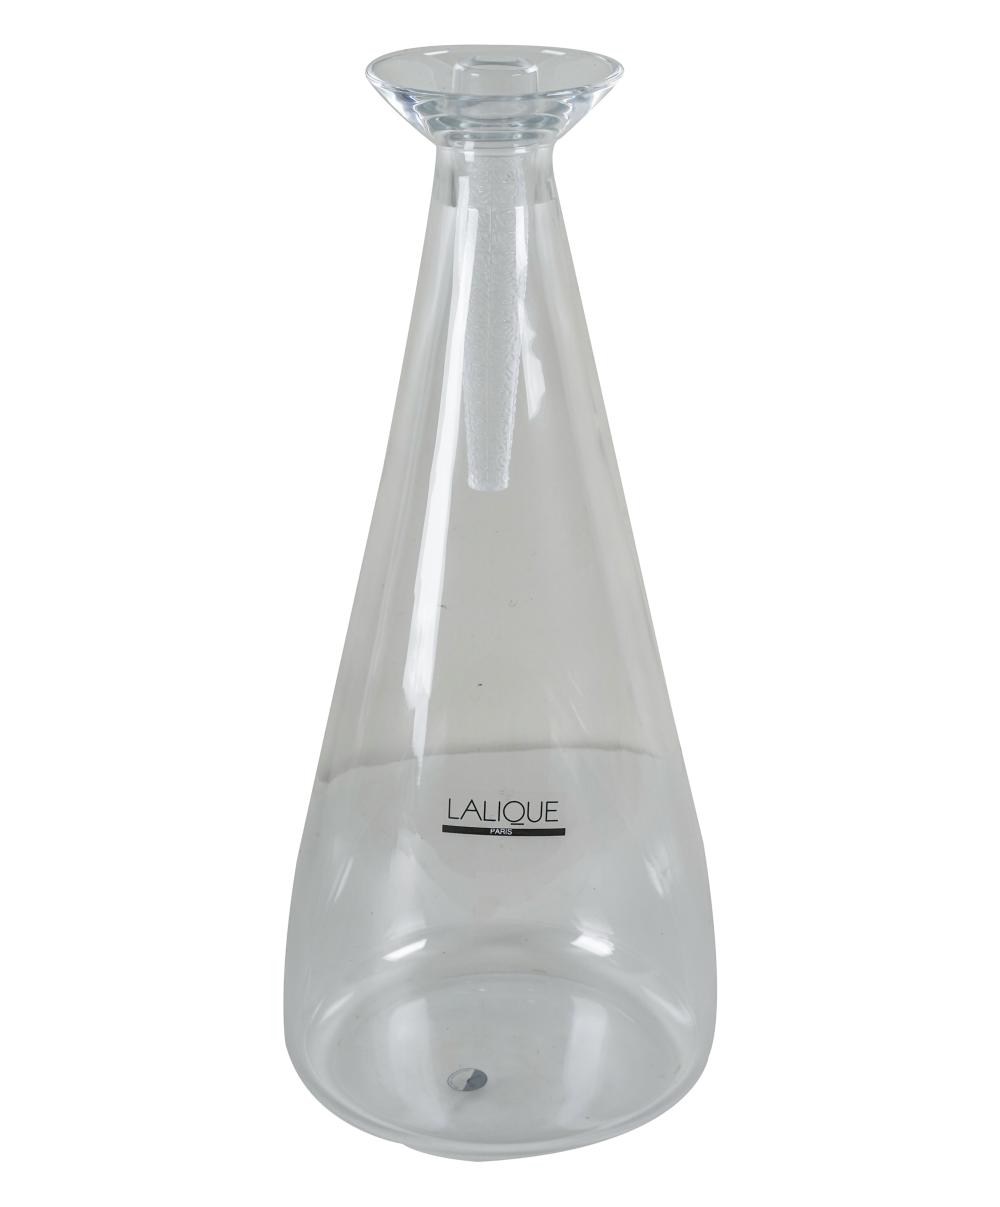 LALIQUE GLASS DECANTERsigned Lalique 3322c9